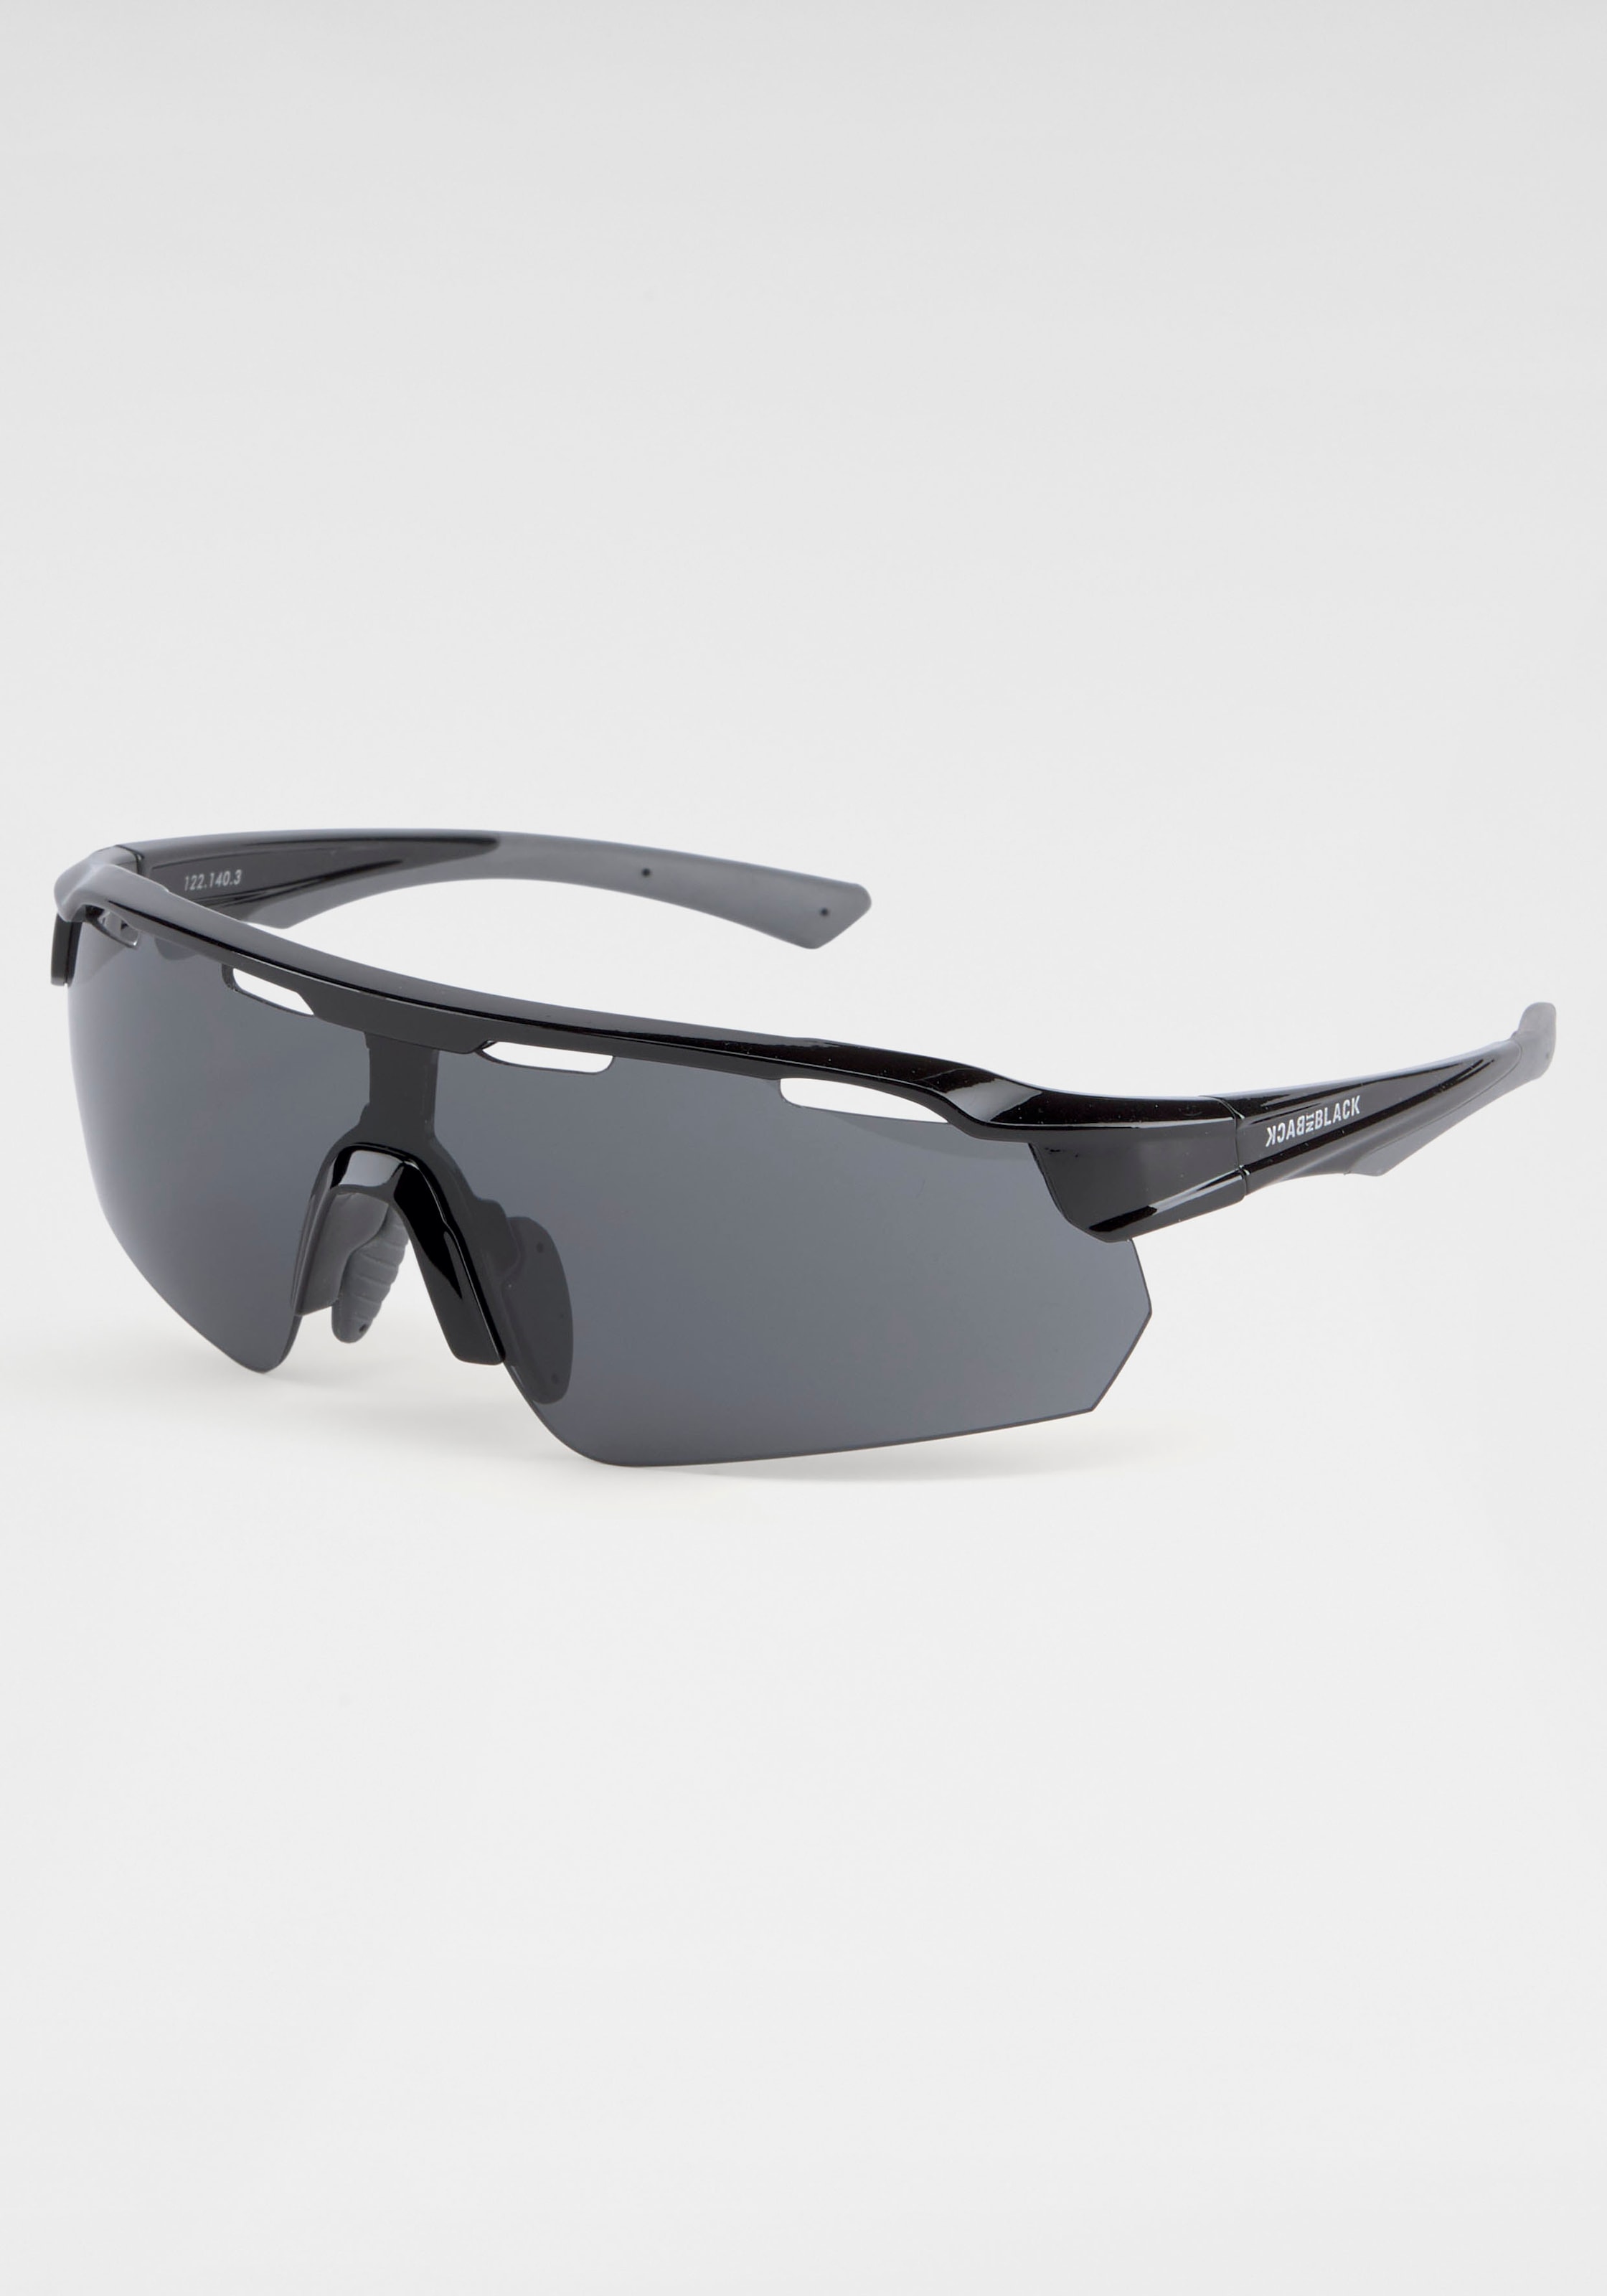 BACK IN BLACK BAUR gebogenen mit Eyewear Sonnenbrille, | Gläsern kaufen für